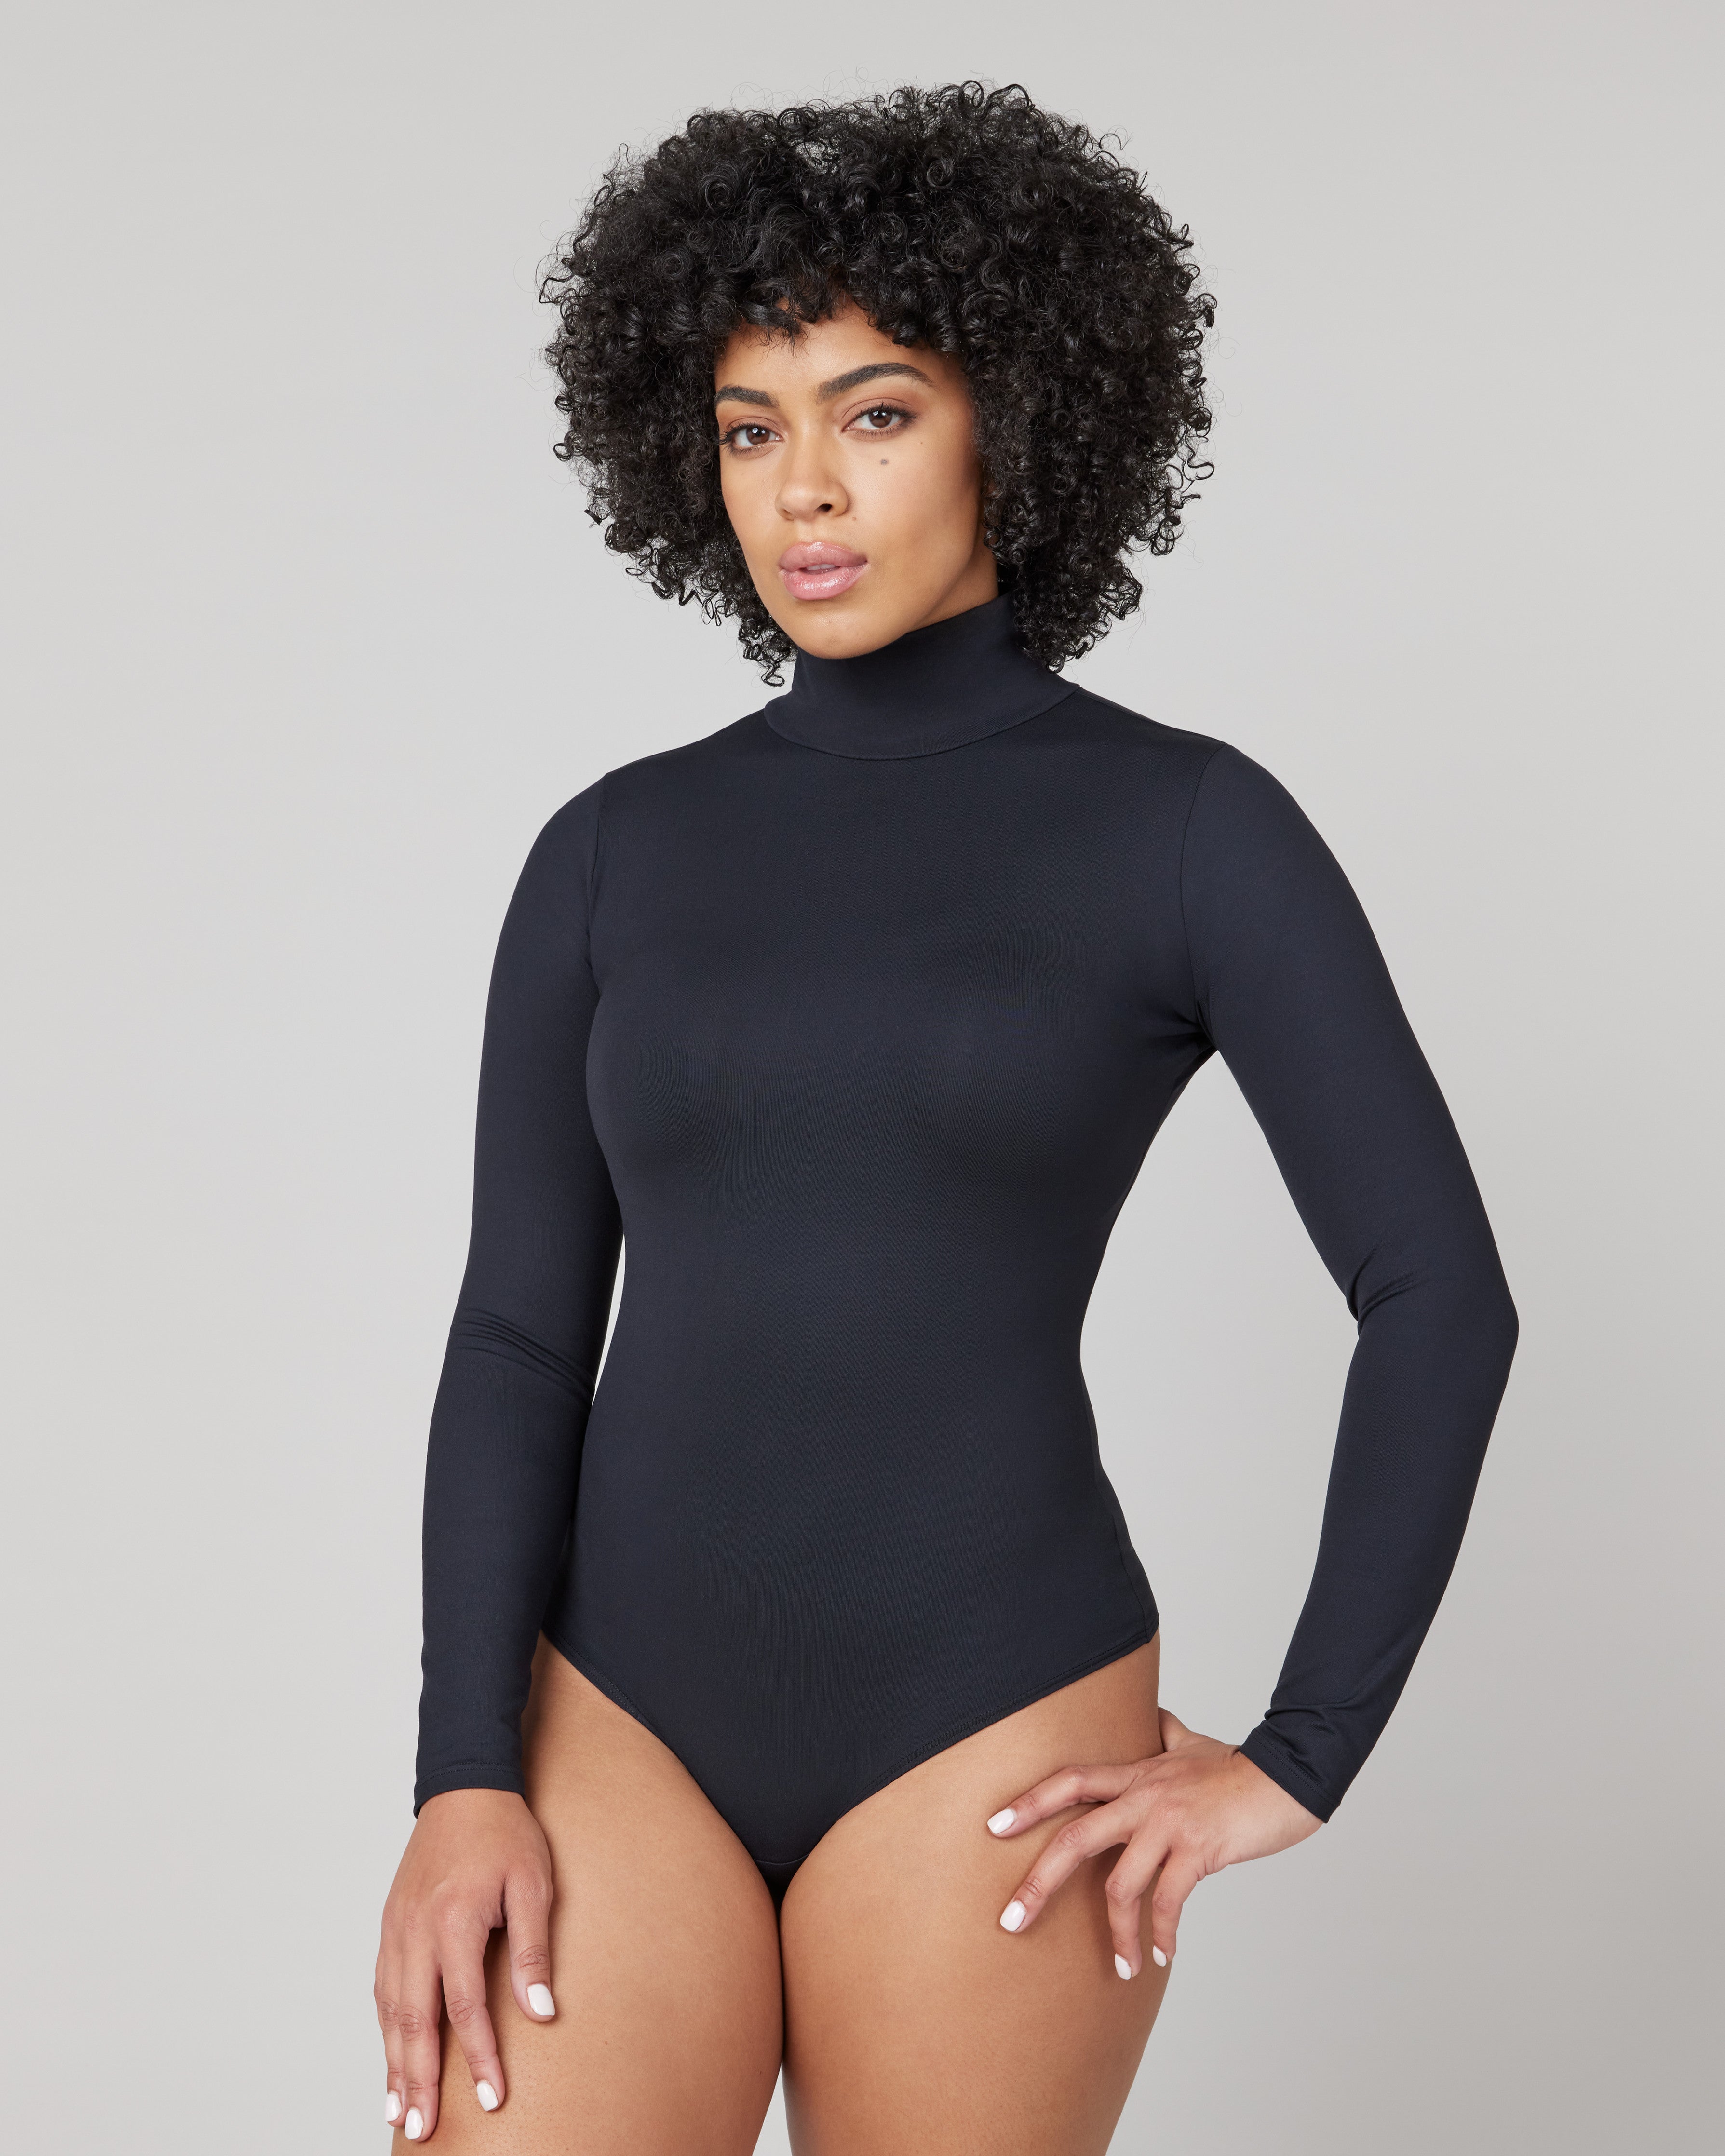 Naphy Women's Shapewear Bodysuit, Long Sleeve, High Neck, Body